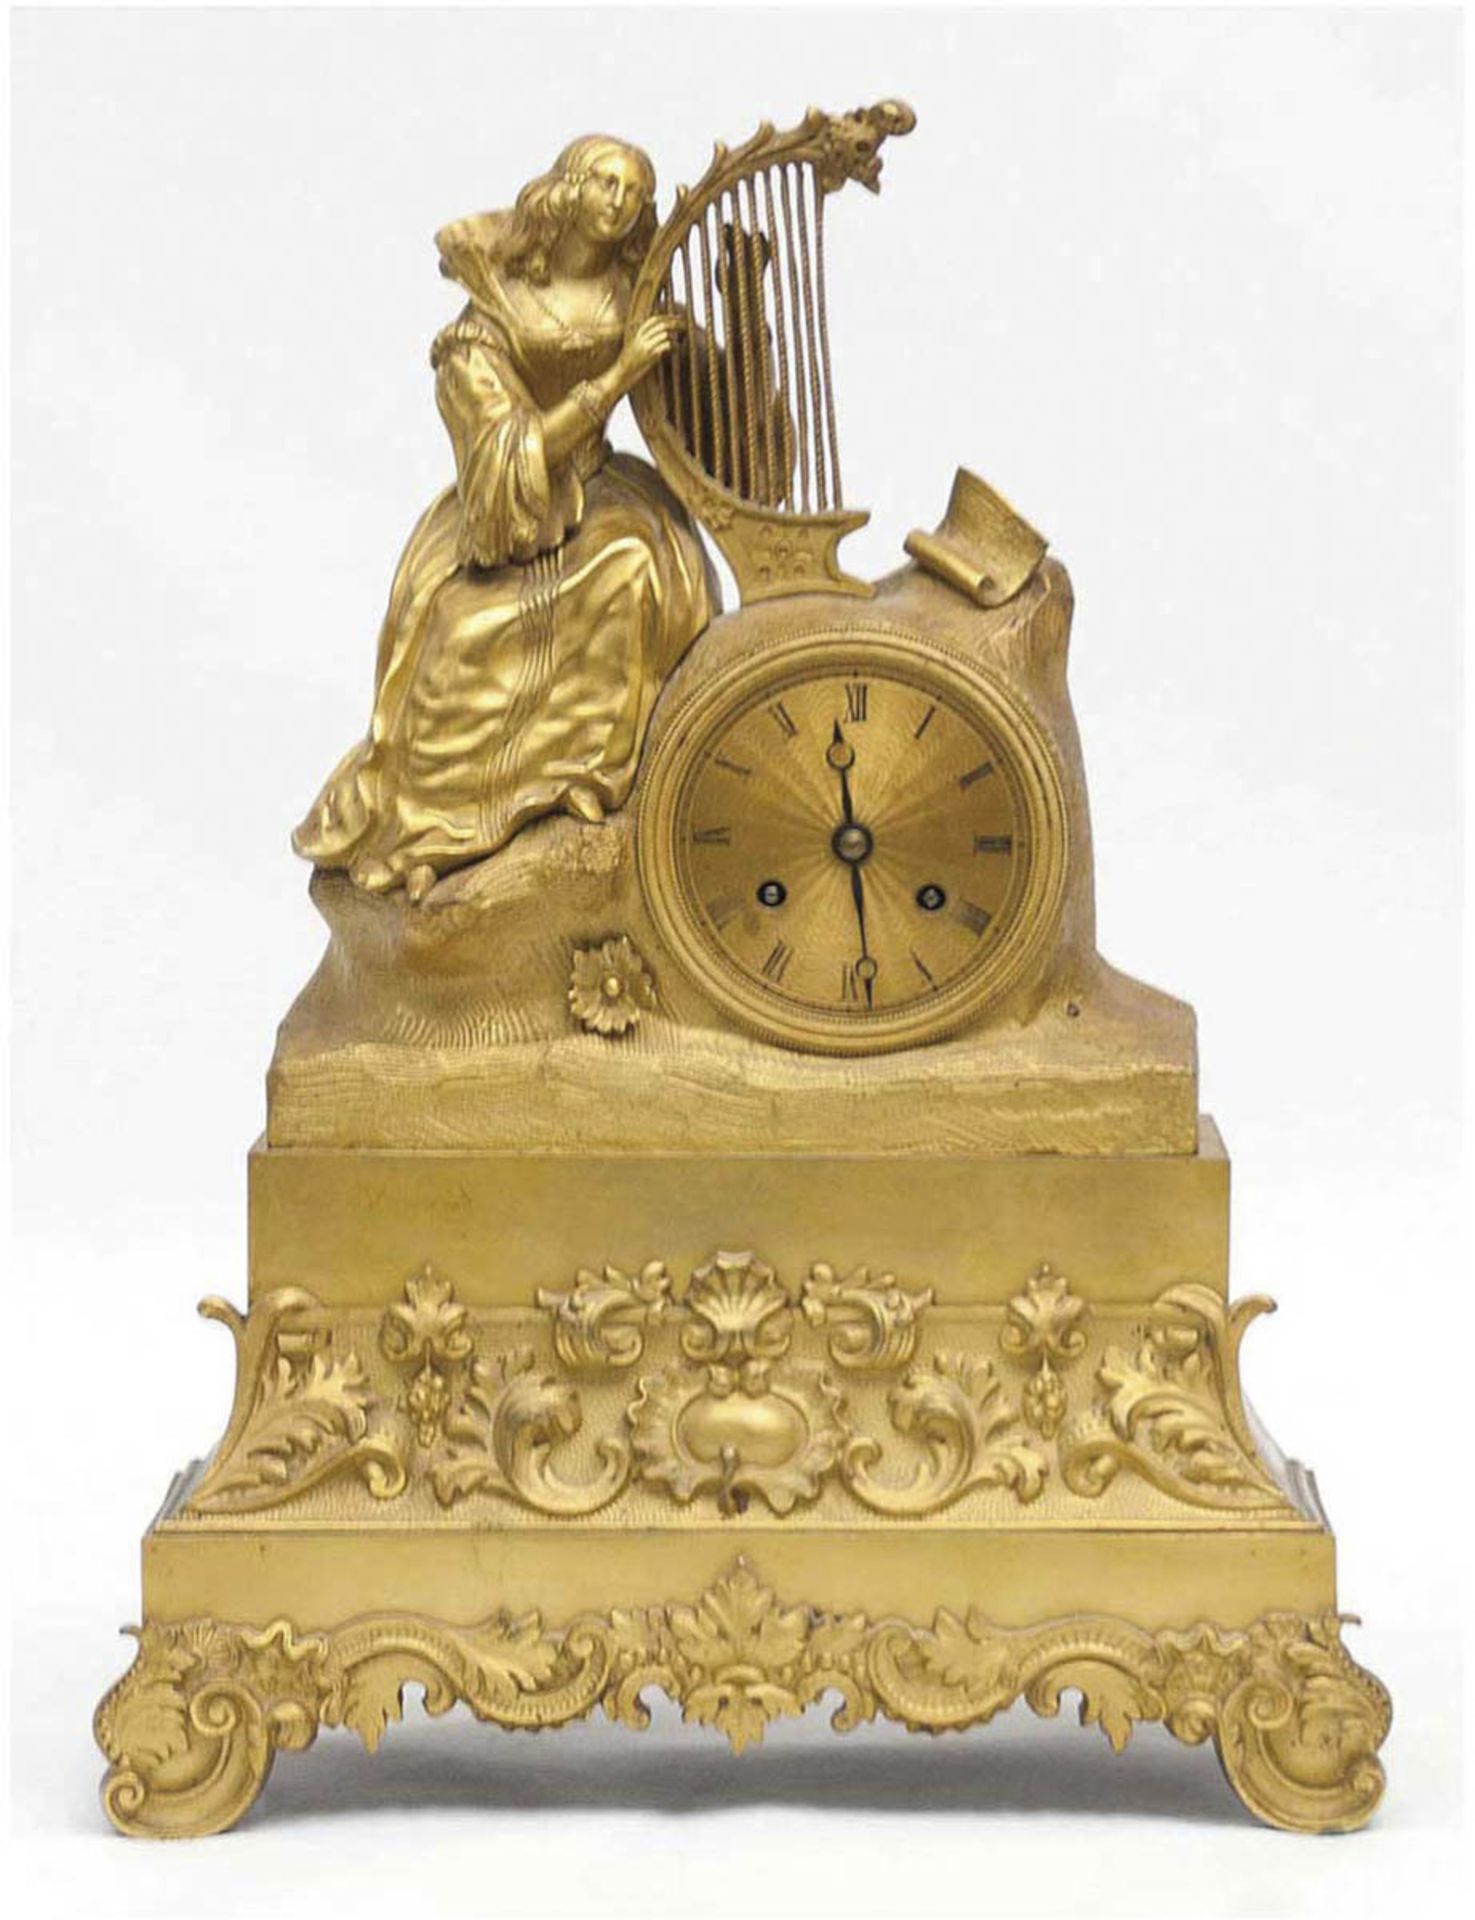 Pendule um 1840, Harfe spielende Dame, Bronze, vergoldet, Fadenaufhängung,Halbstundenschlag auf